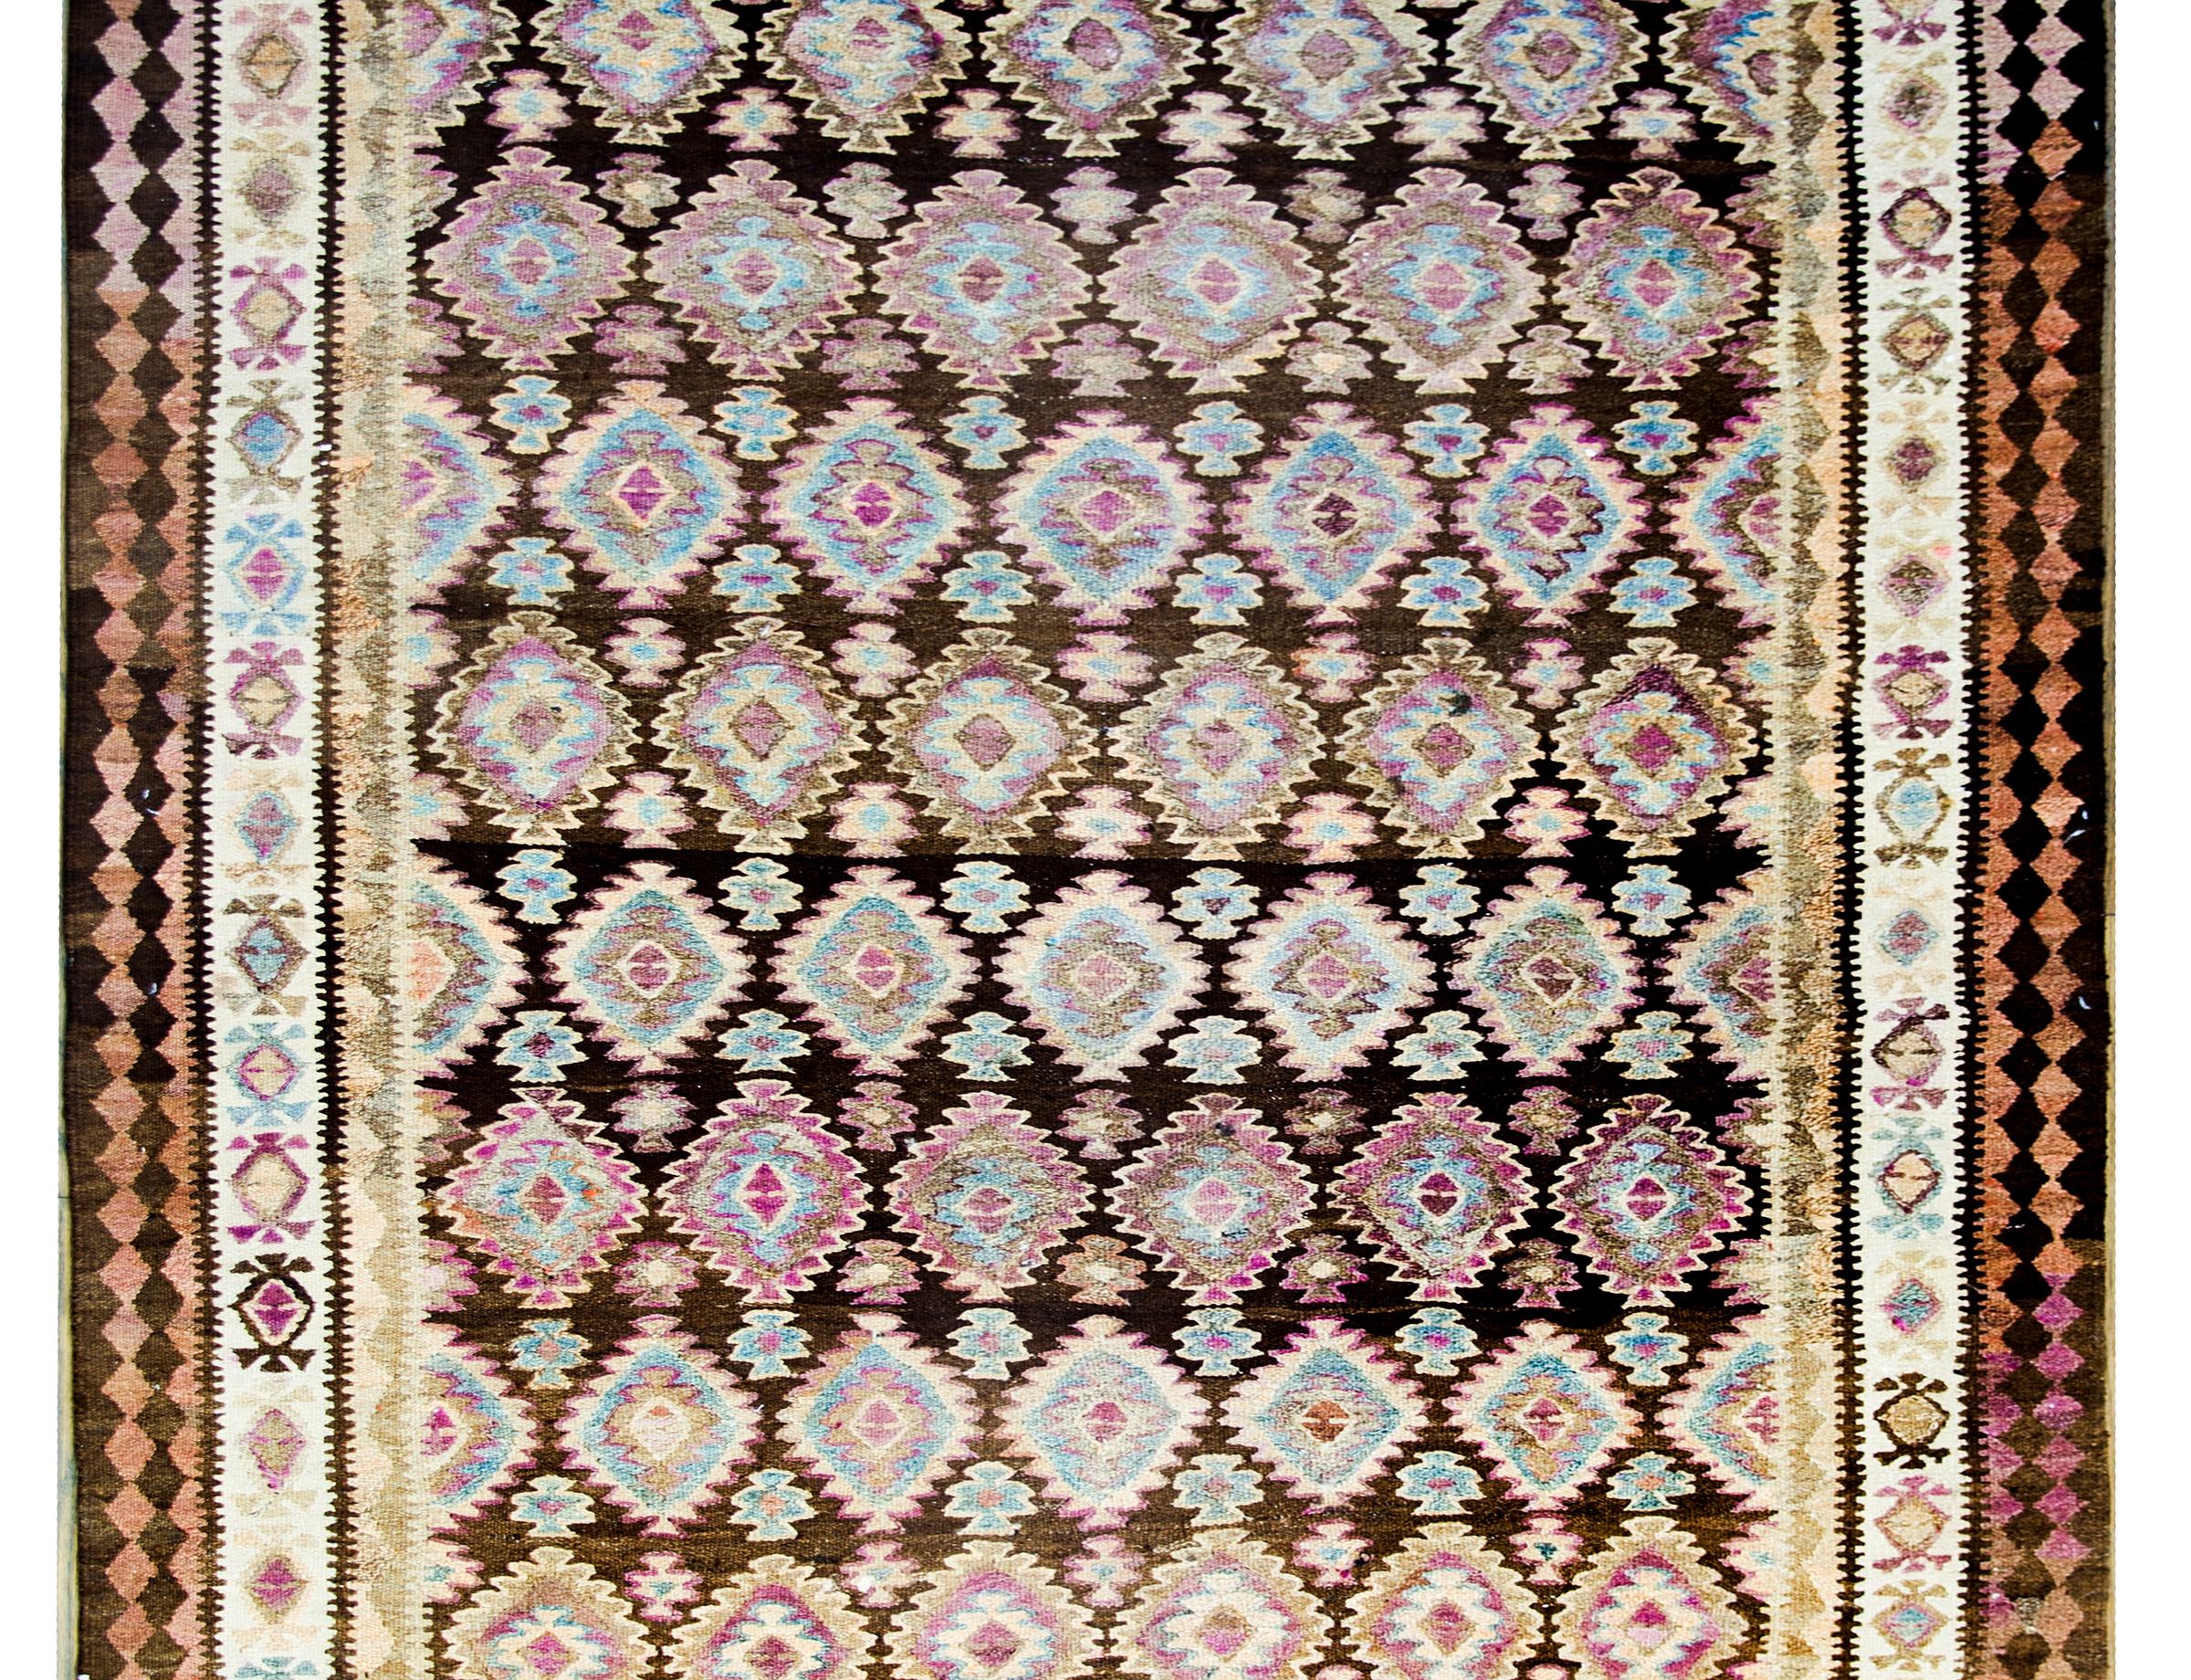 Ein persischer Qazvin-Kelim-Teppich aus dem frühen 20. Jahrhundert mit einem Allover-Rautenmuster aus mehrfarbiger Wolle, umgeben von einer komplexen Bordüre aus geometrisch gemusterten Streifen.